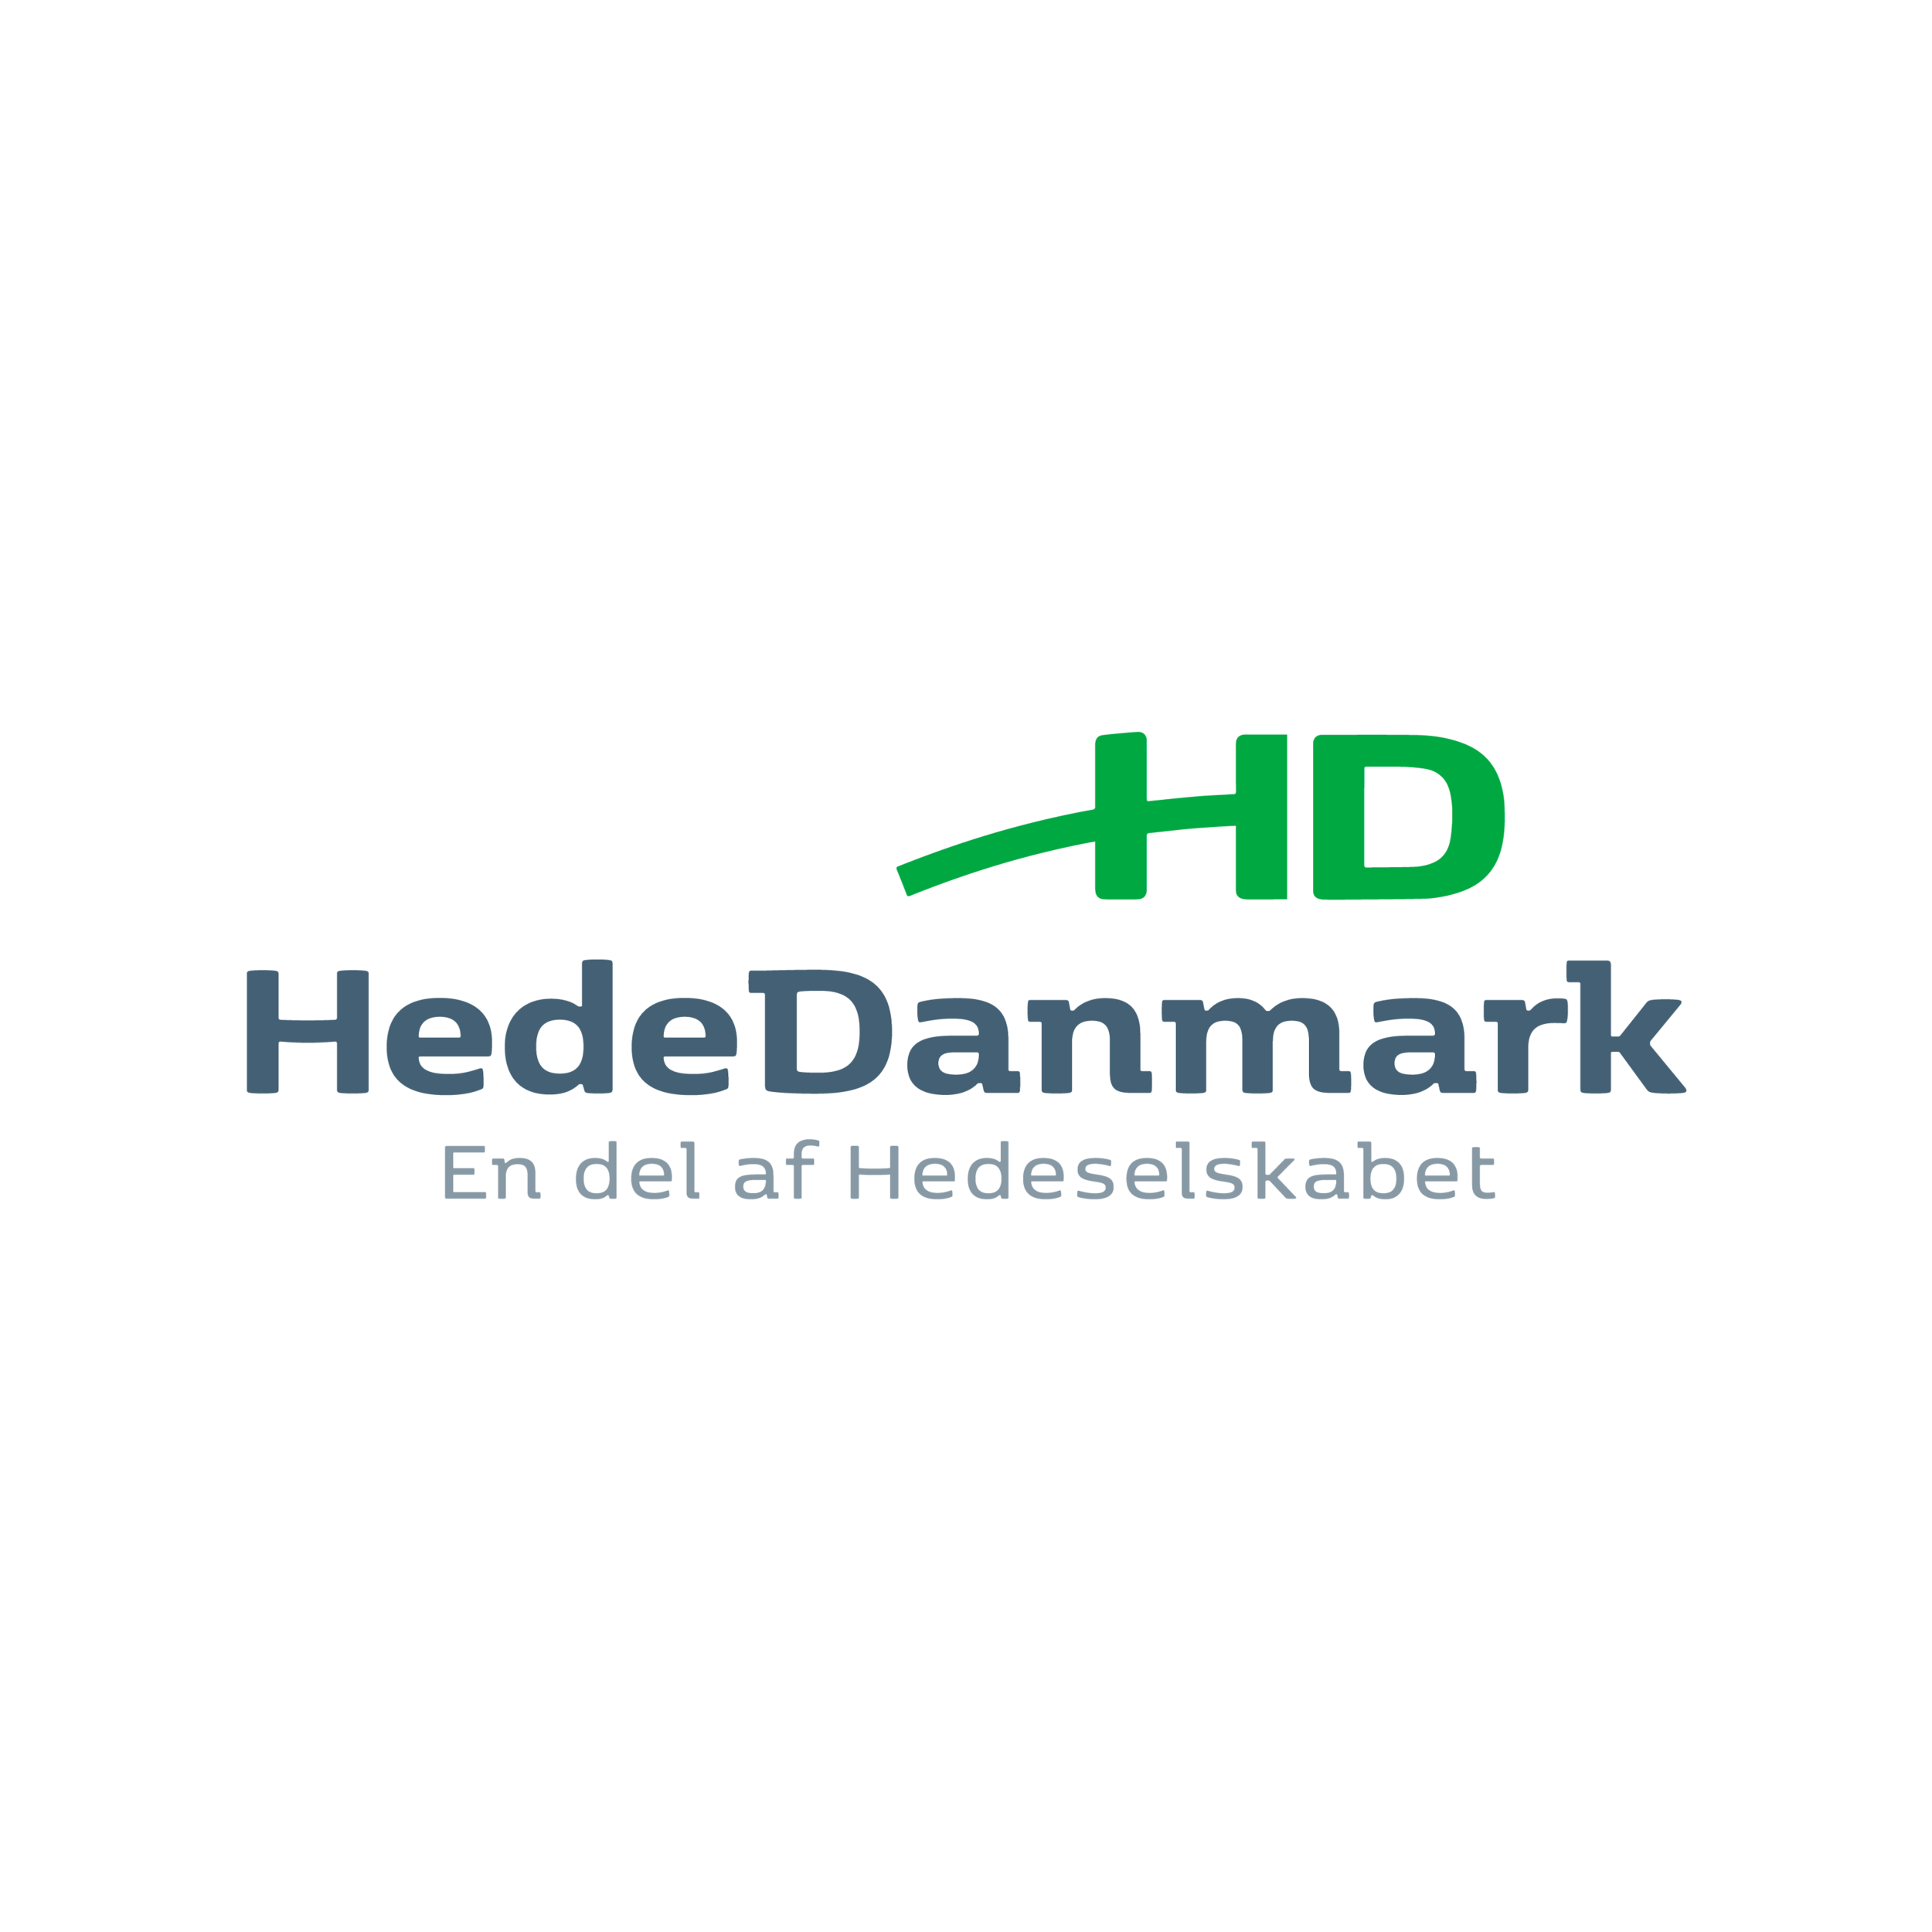 HedeDanmark_2021logo_RGB.png